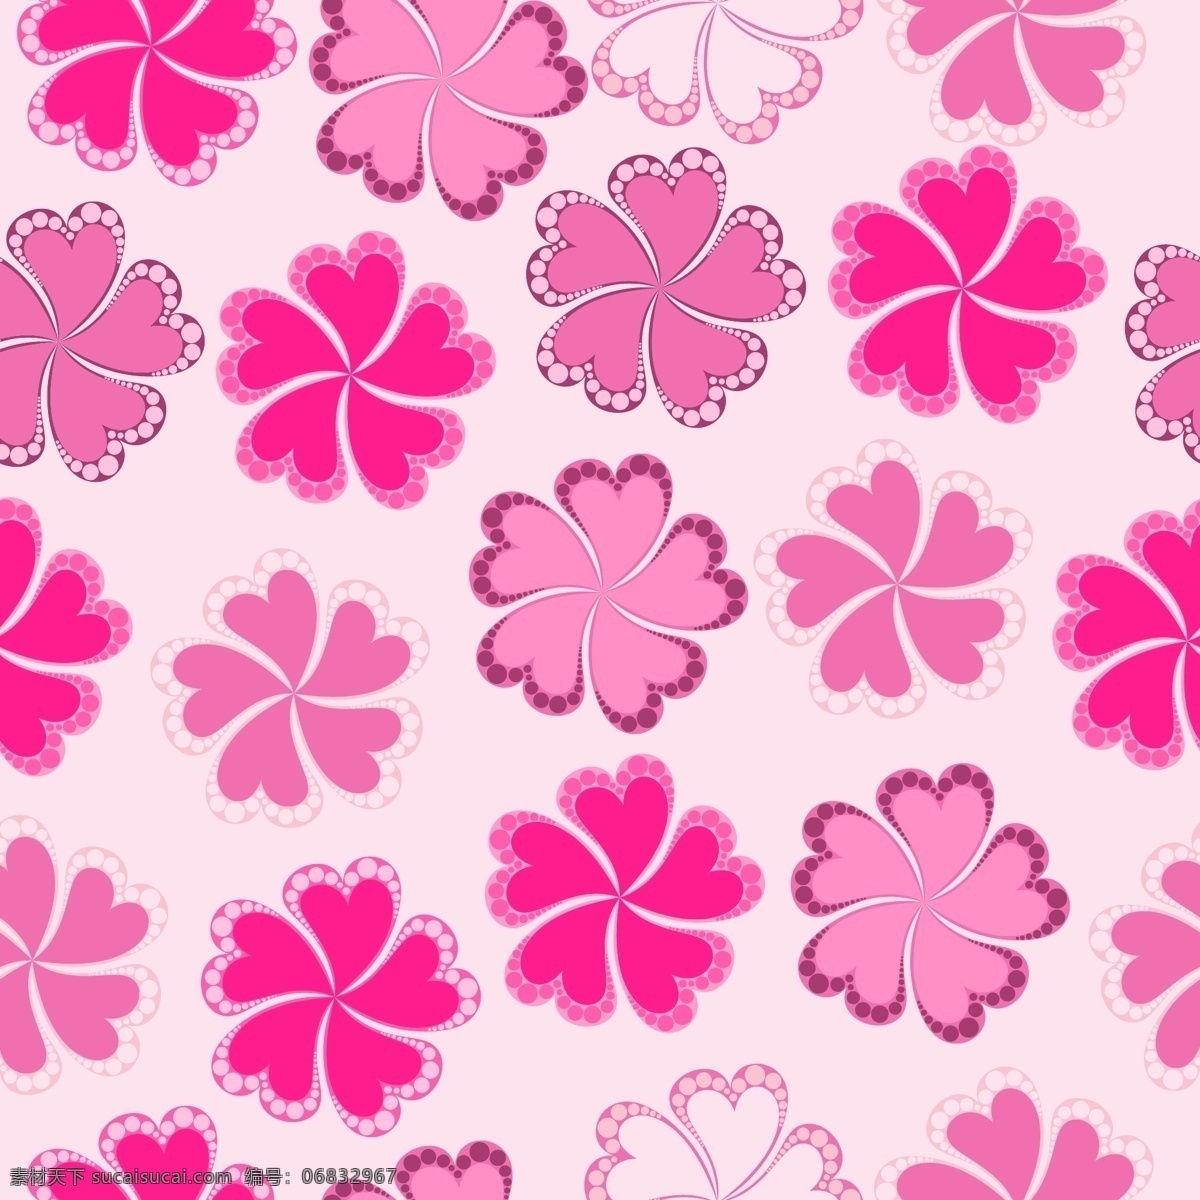 花型 边框 粉色背景 漂亮花朵矢量 设计素材 花型边框5 海报 其他海报设计